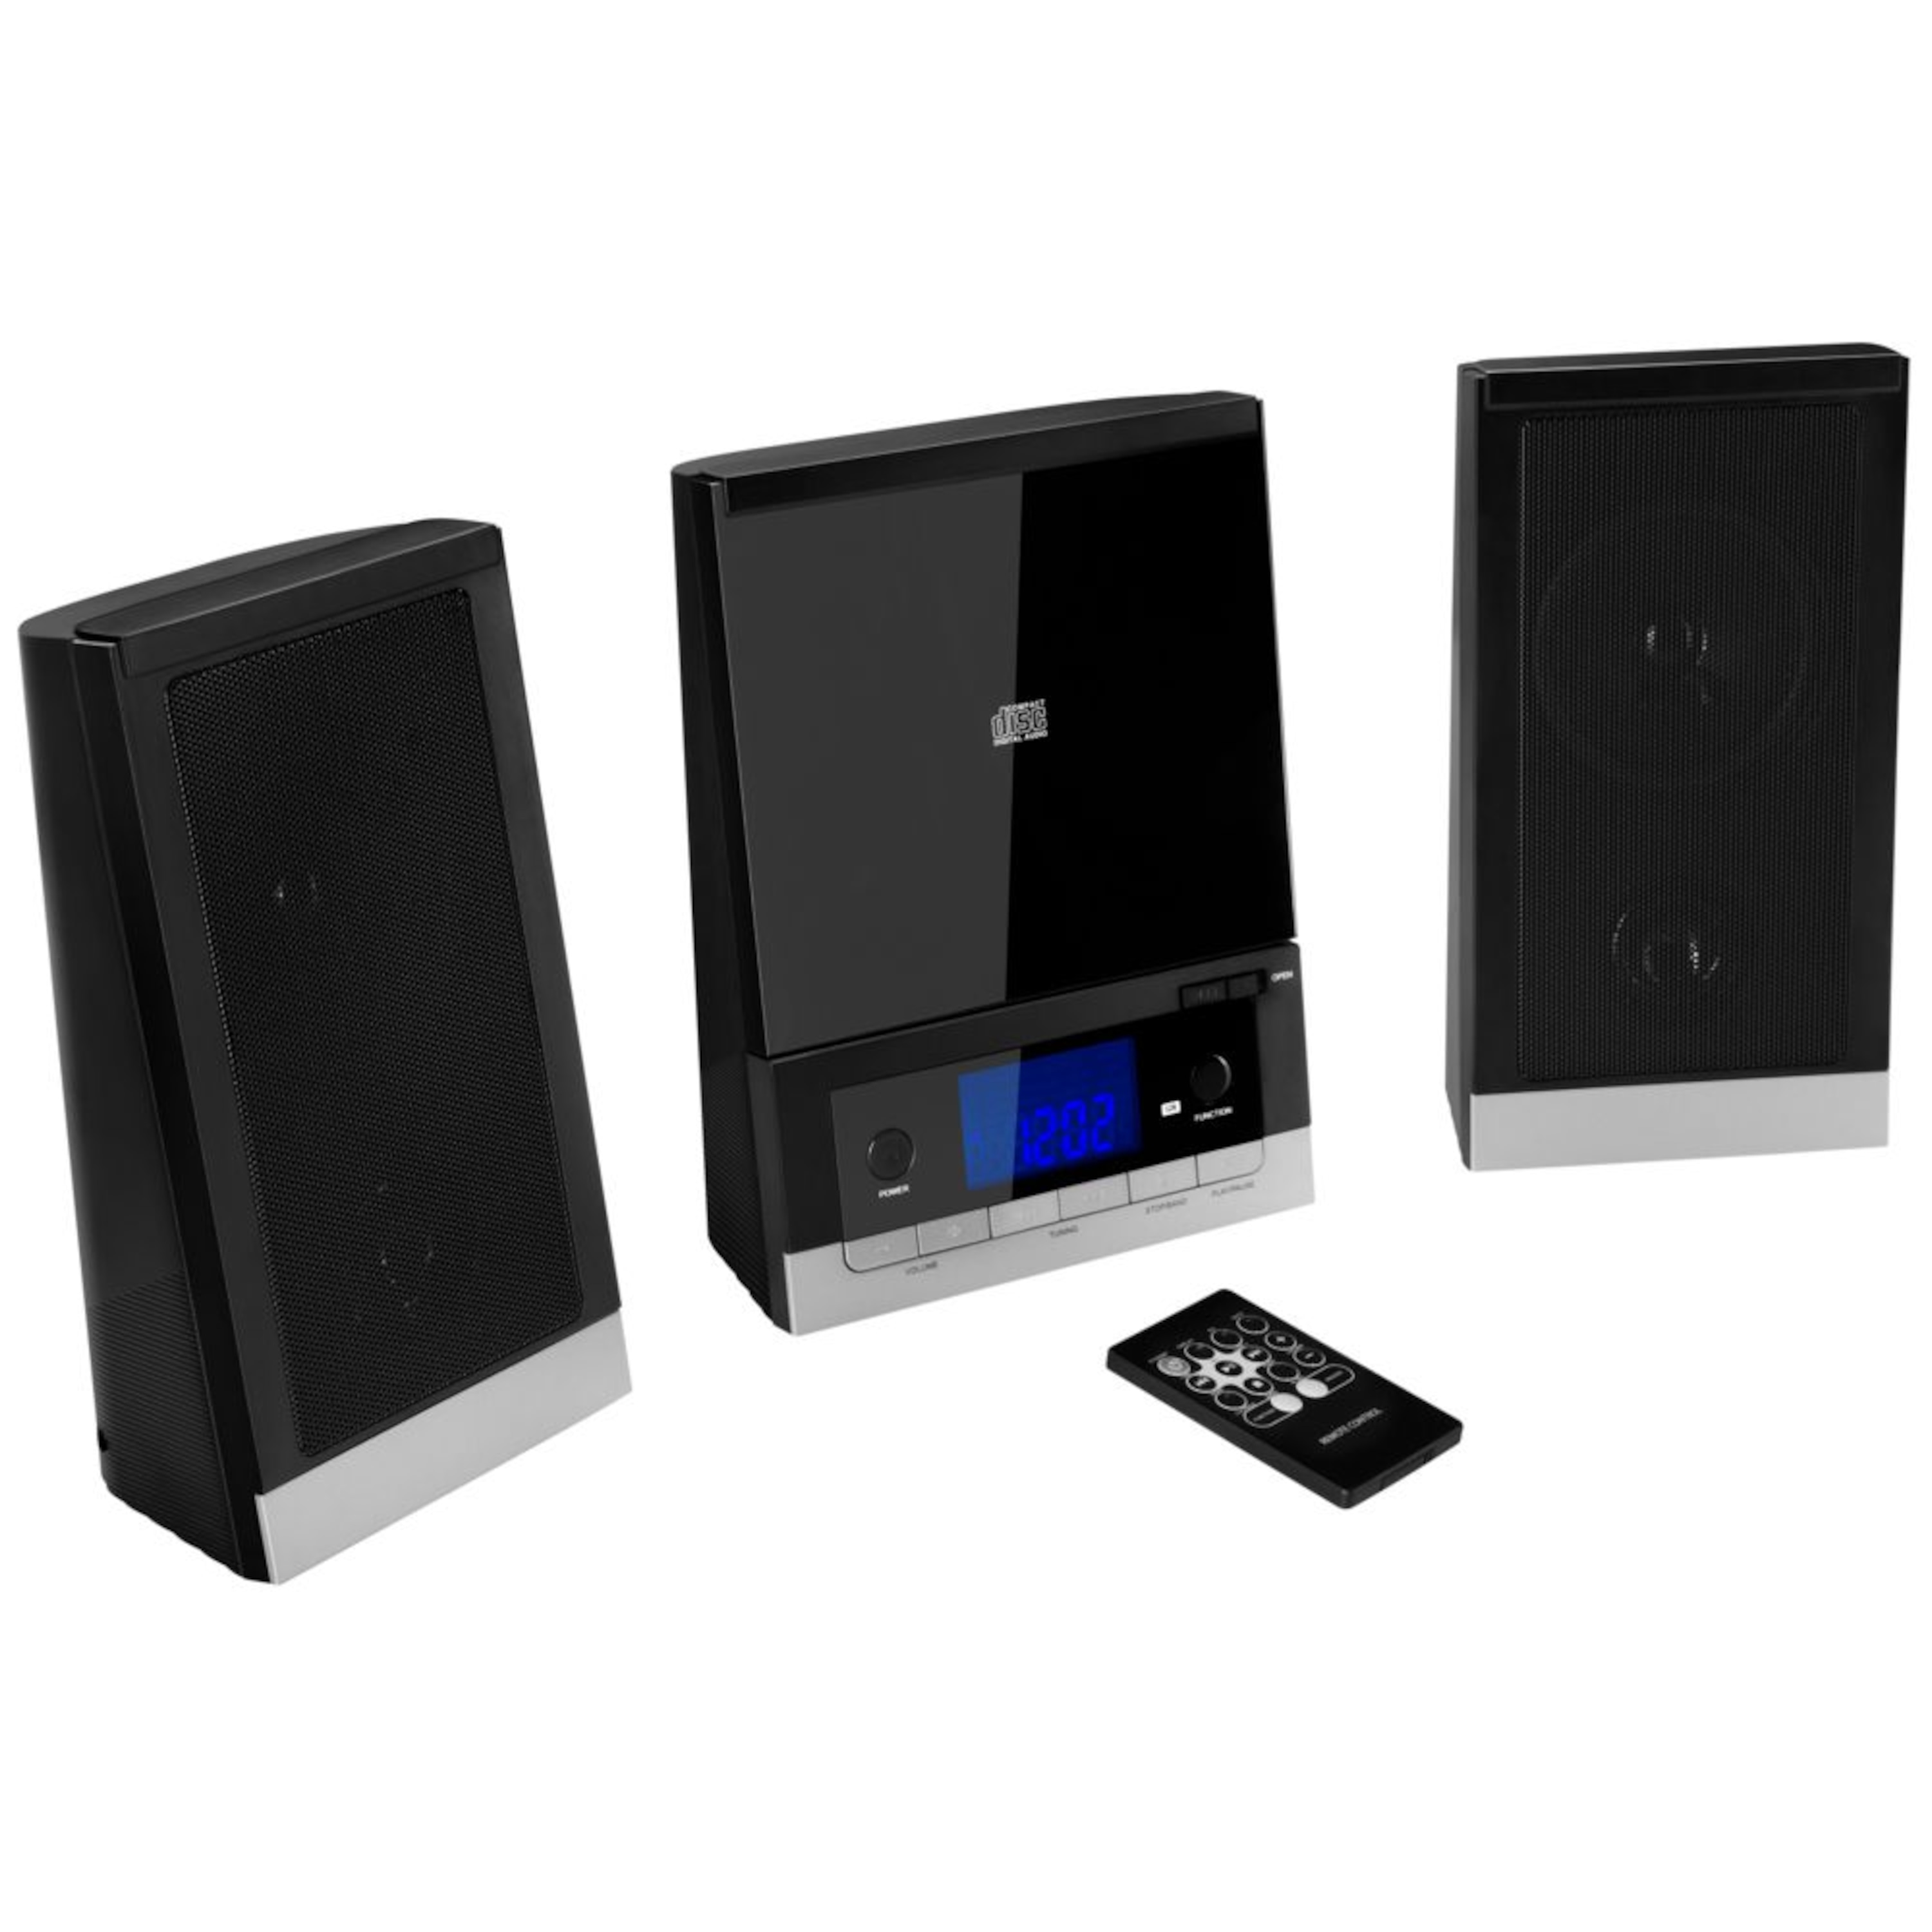 MEDION® LIFE® E64074 Mikro-Audio-System mit CD-Player UKW/MW Stereo Radio, Weckfunktion, 30 Senderspreicher, LC-Display mit blauer Hintergrundbeleuchtung, 2 x 25 W